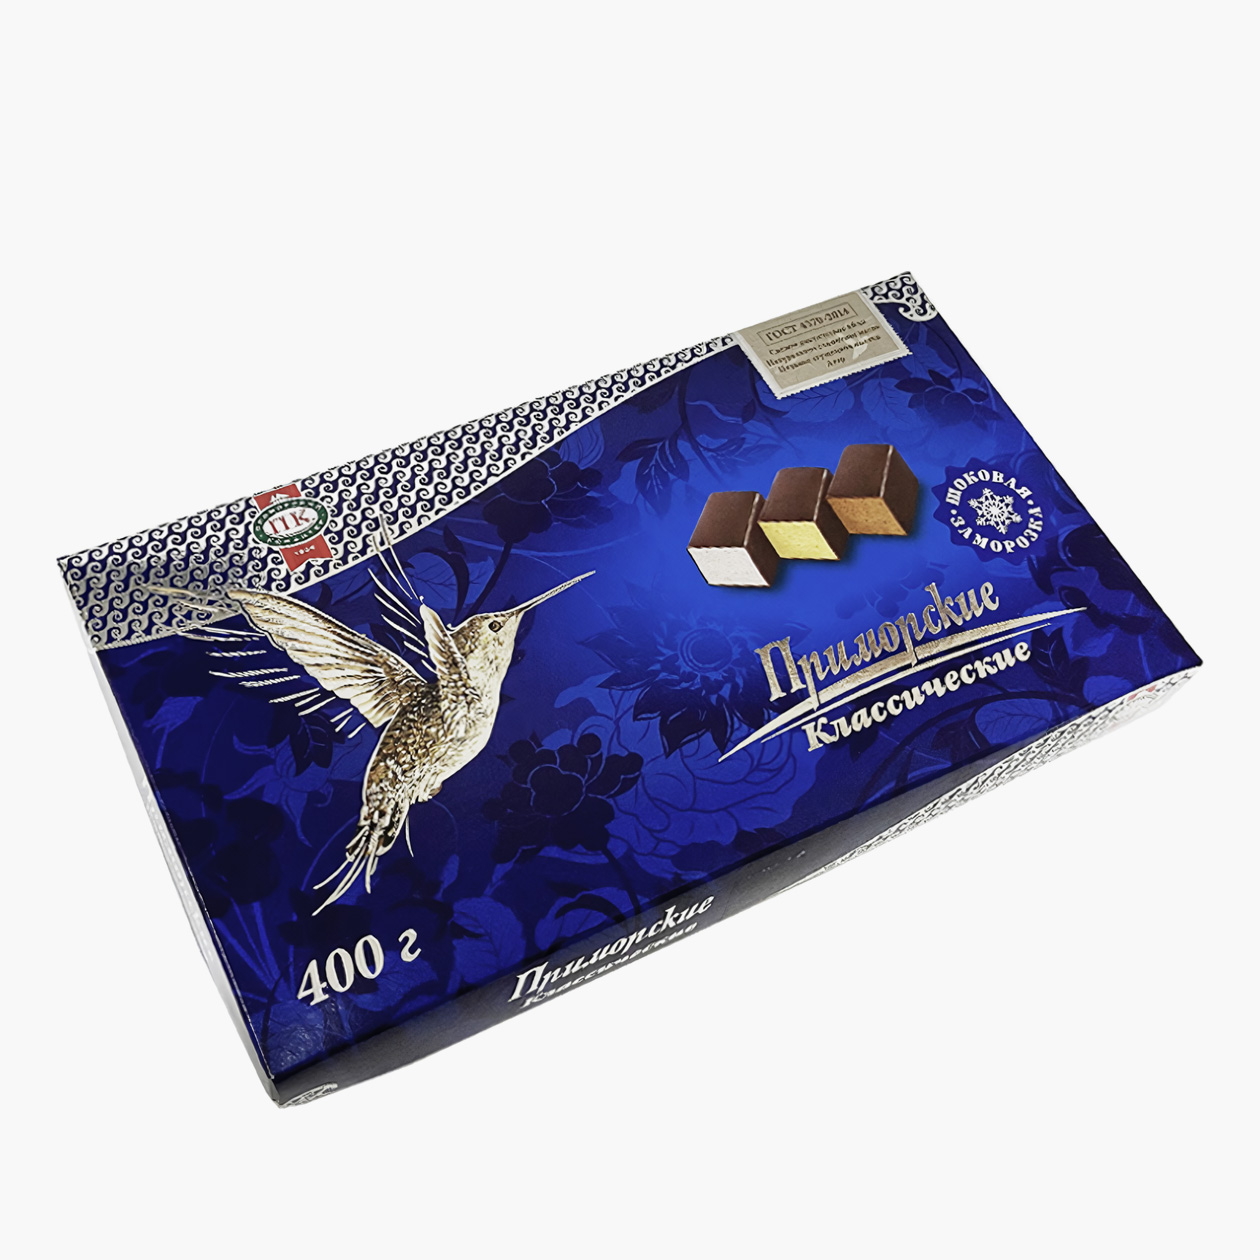 «Птичье молоко» из Владивостока. Упаковка весом 400 г обойдется в 580 ₽. Источник: seafood-shop.ru